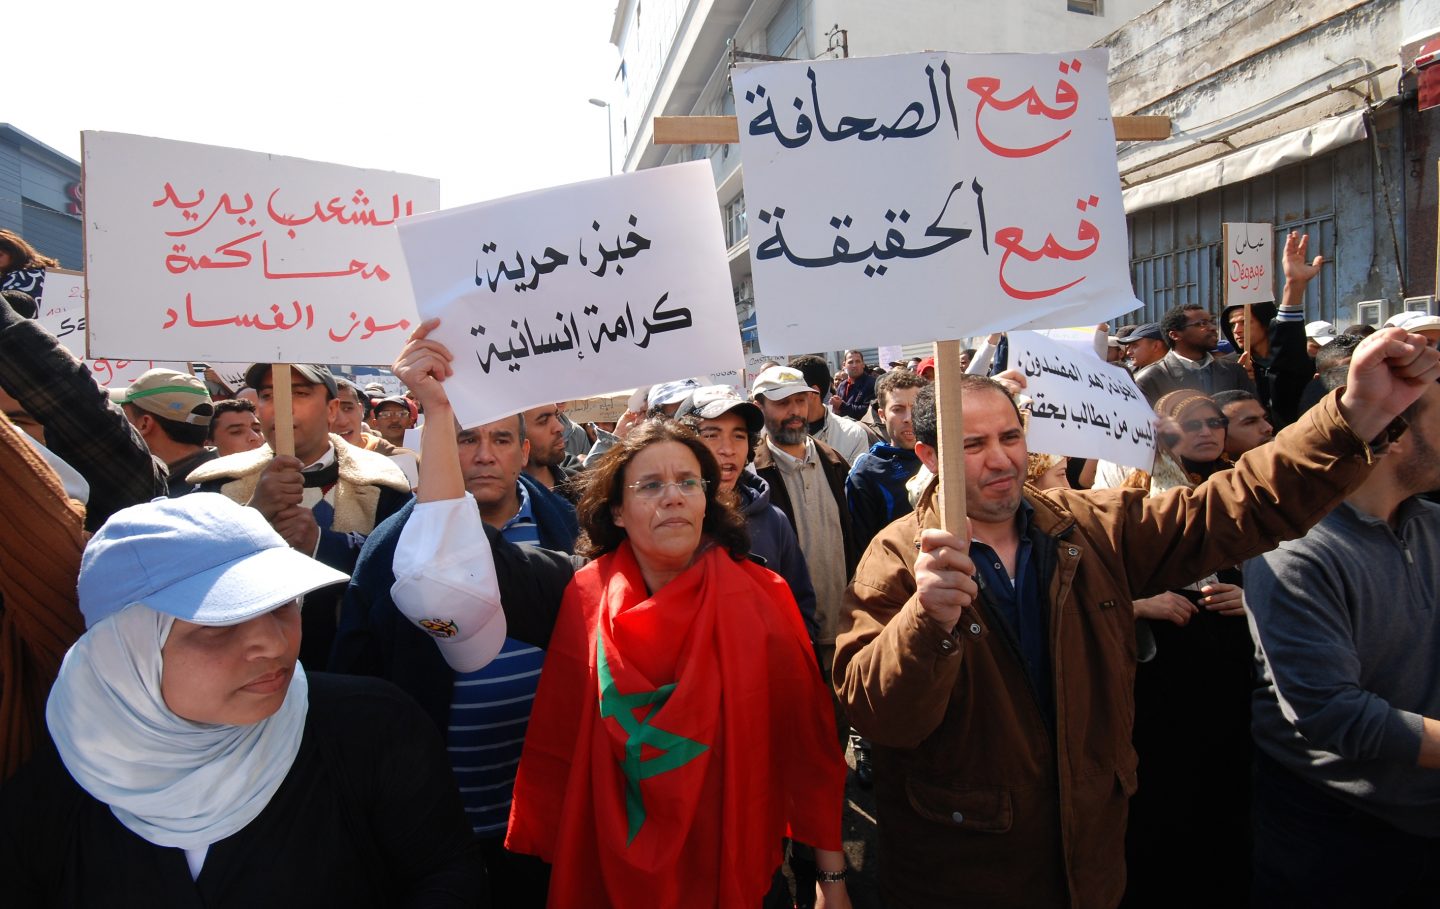 تقرير يسجل “القطع” مع الانتهاكات الحقوقية الجسيمة بالمغرب